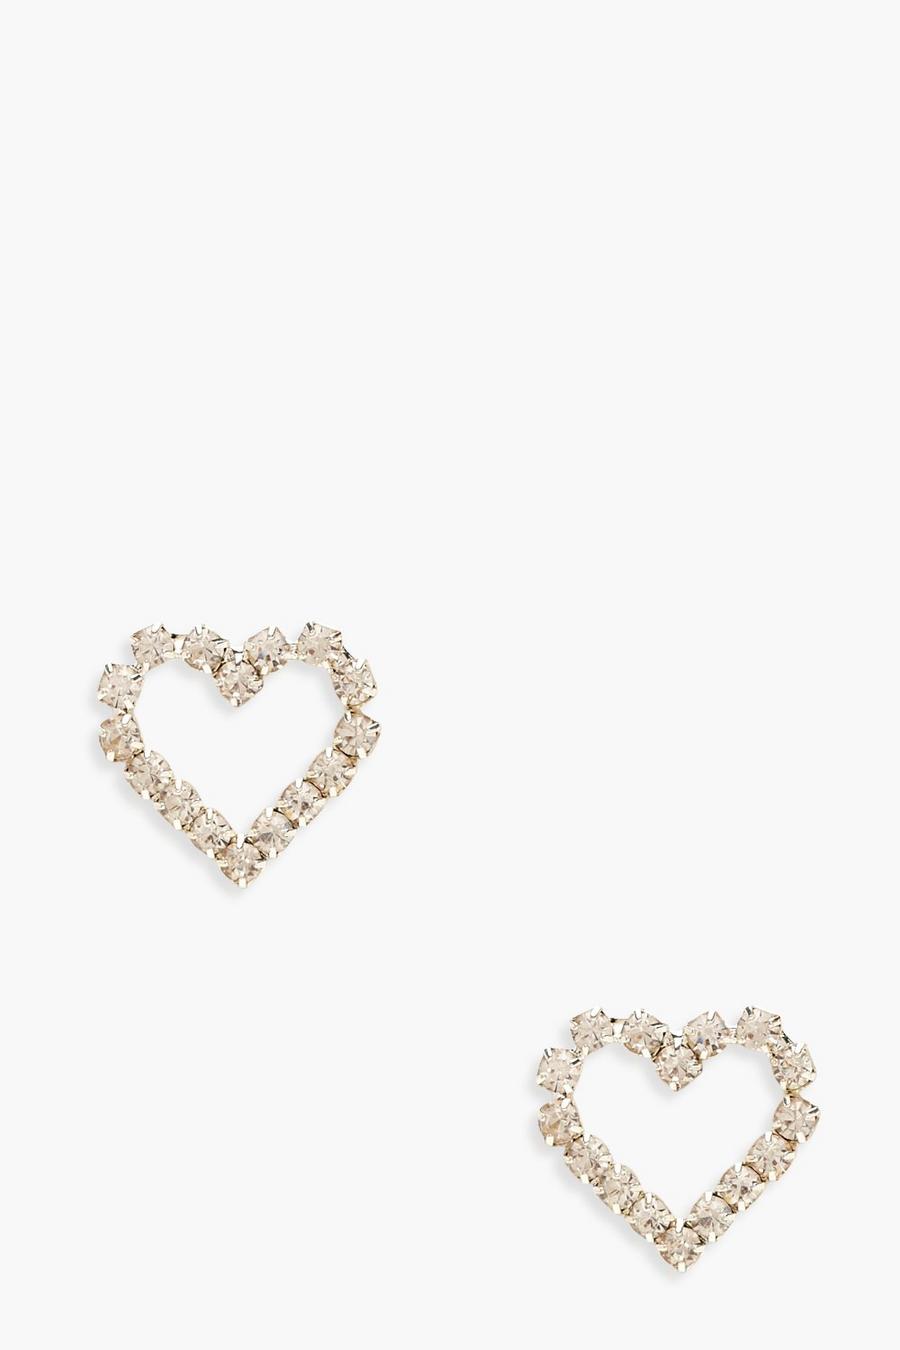 Silver Rhinestone Heart Stud Earrings